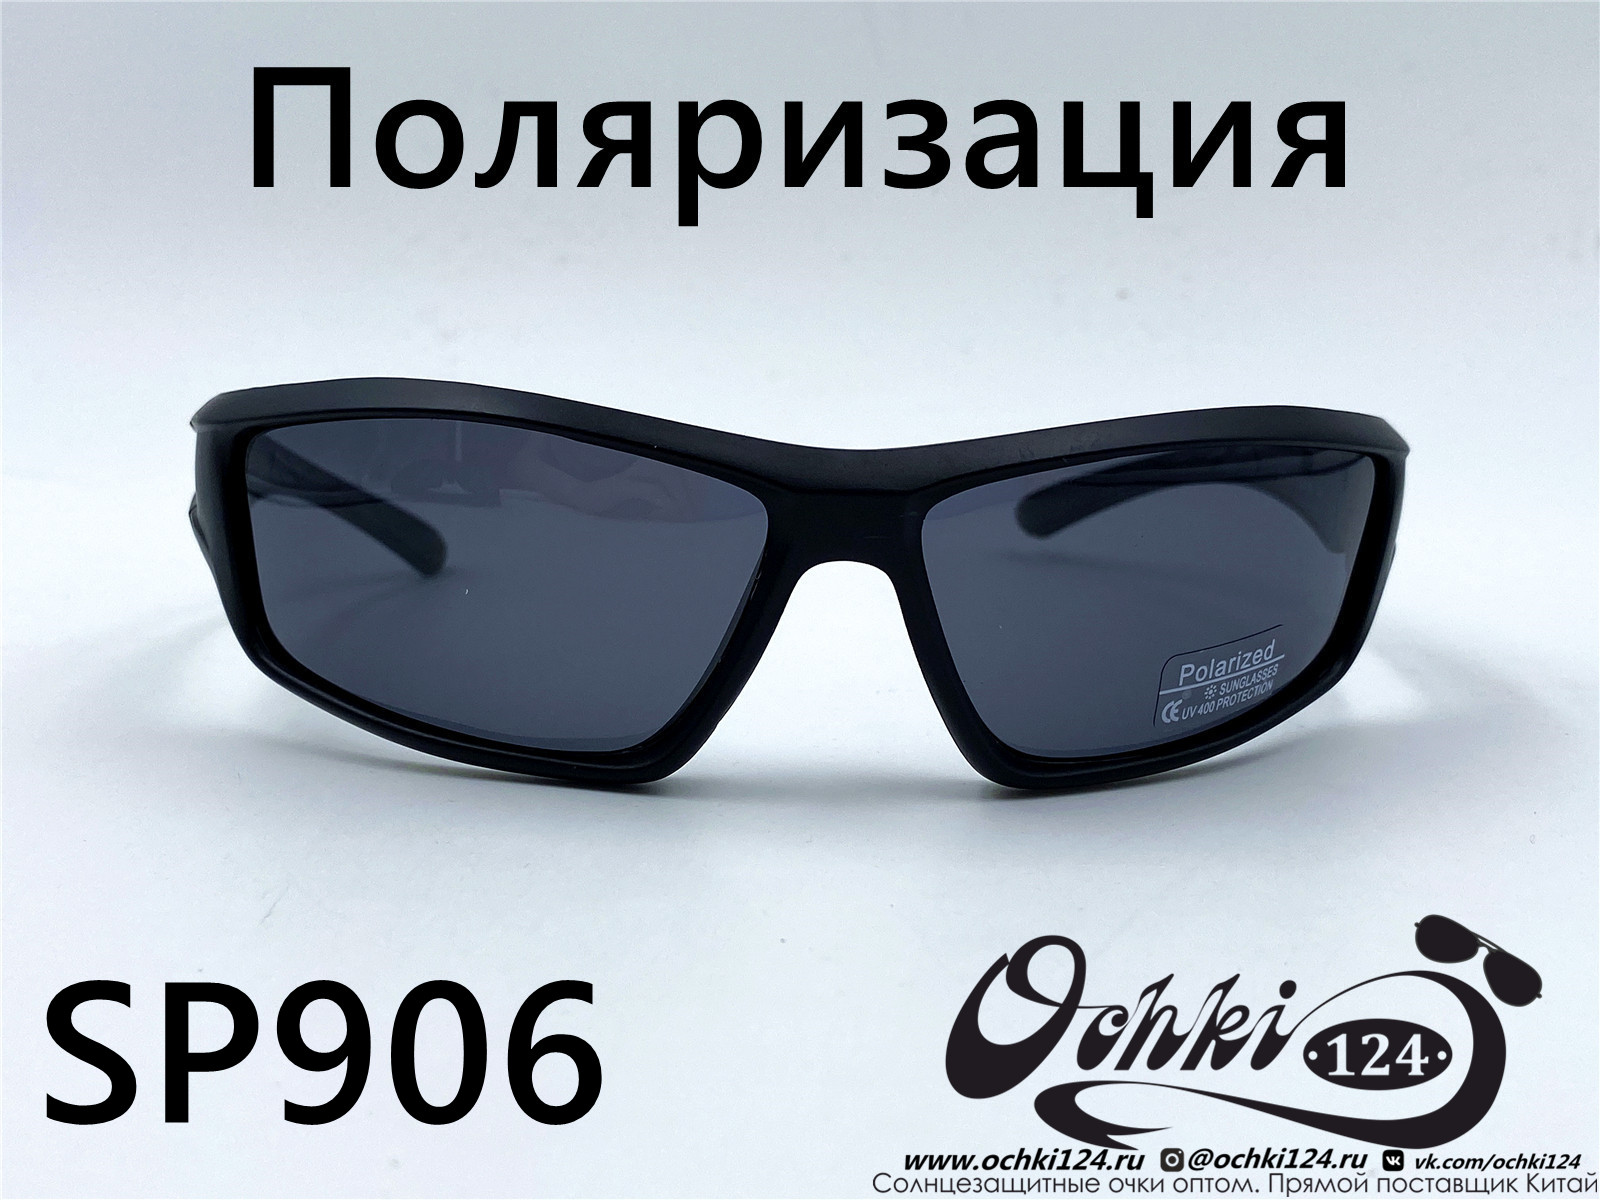  Солнцезащитные очки картинка 2022 Мужские Поляризованные Спорт Materice SP906-6 